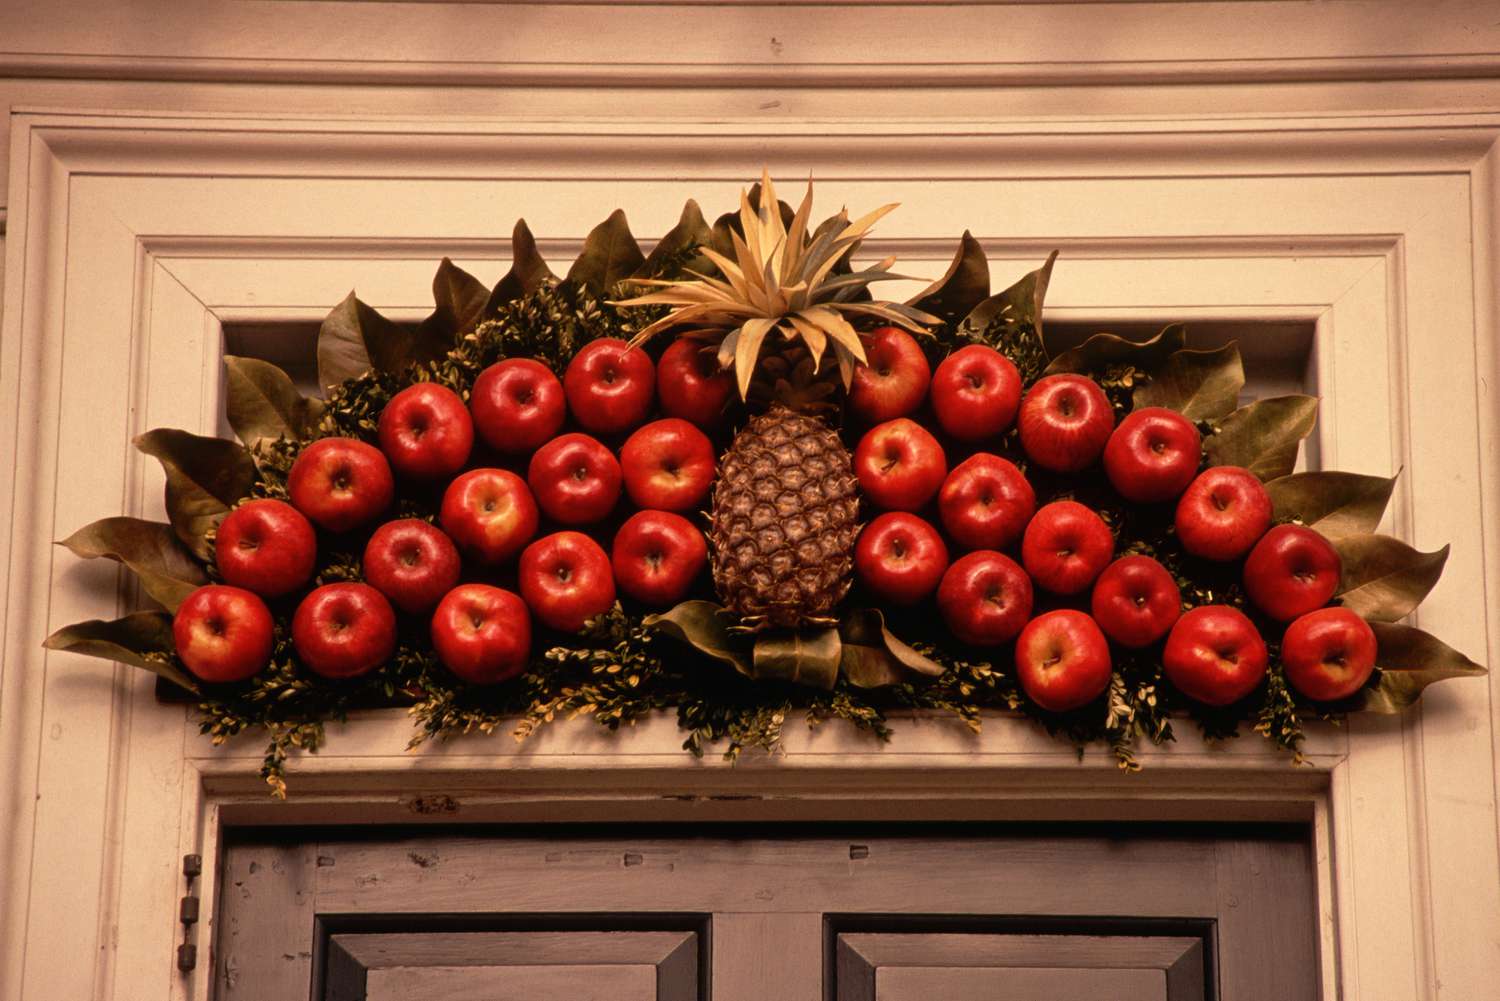 Obst (Äpfel und eine Ananas), das als Weihnachtsdekoration im Freien über einer Tür angebracht ist.